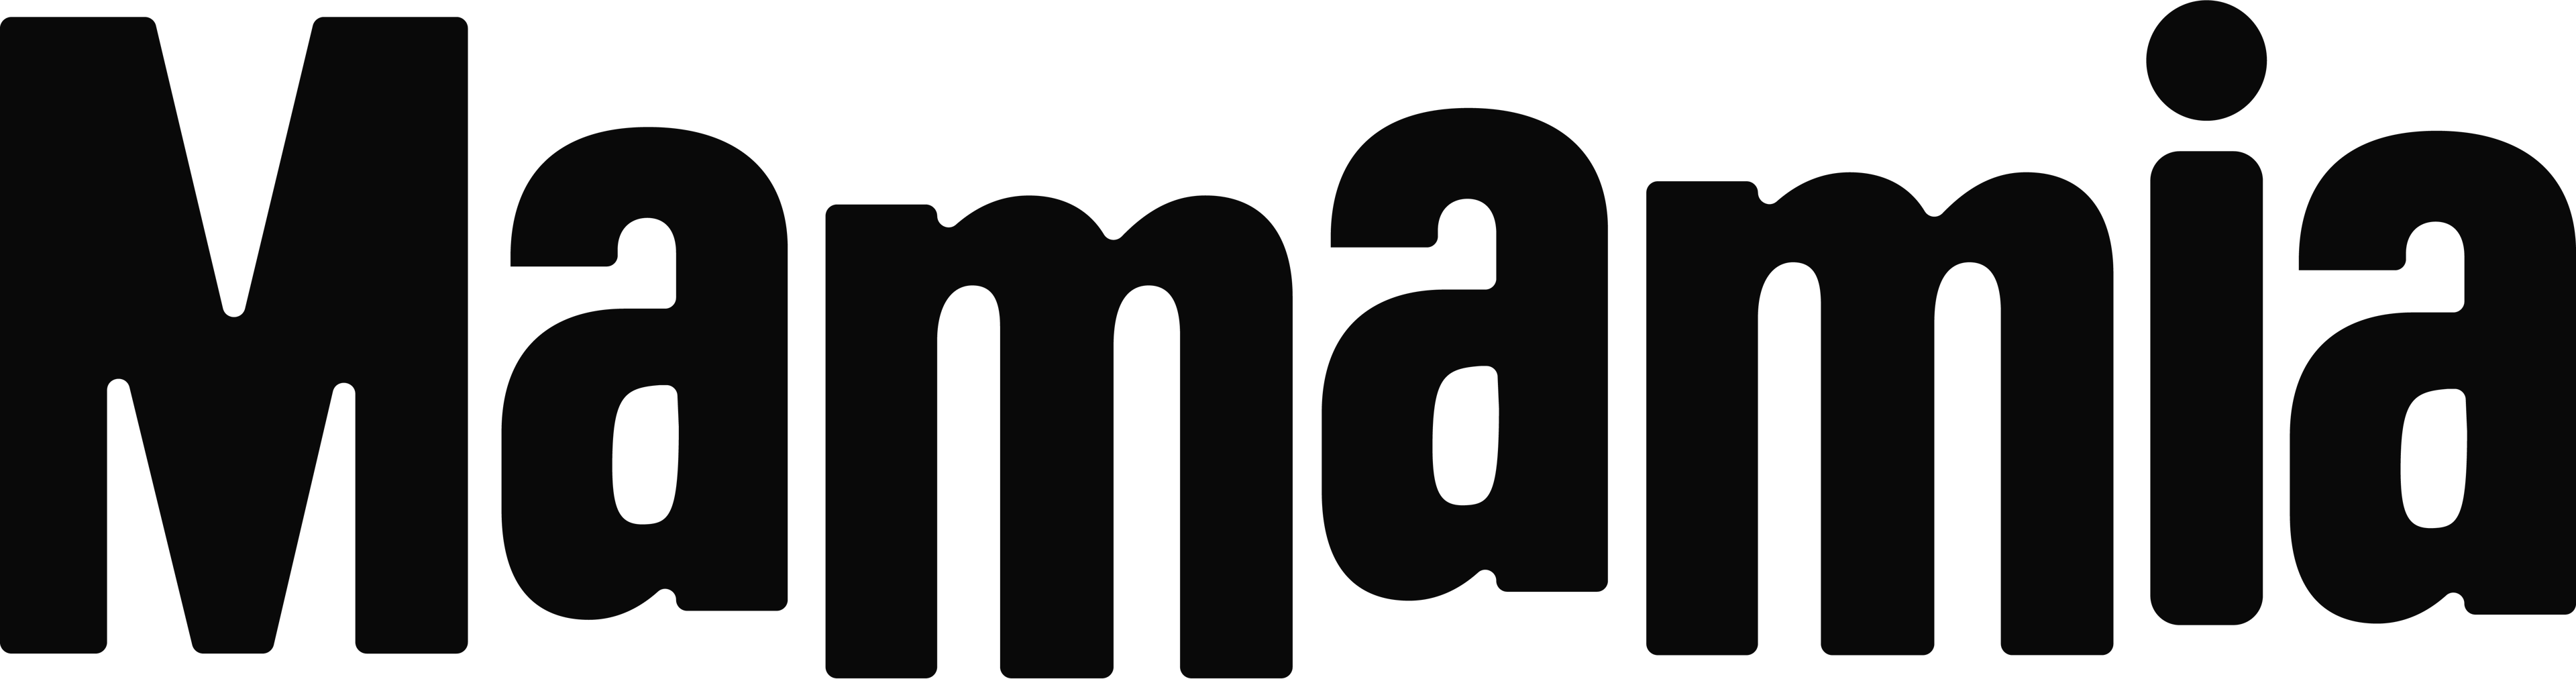 Mamamia logo